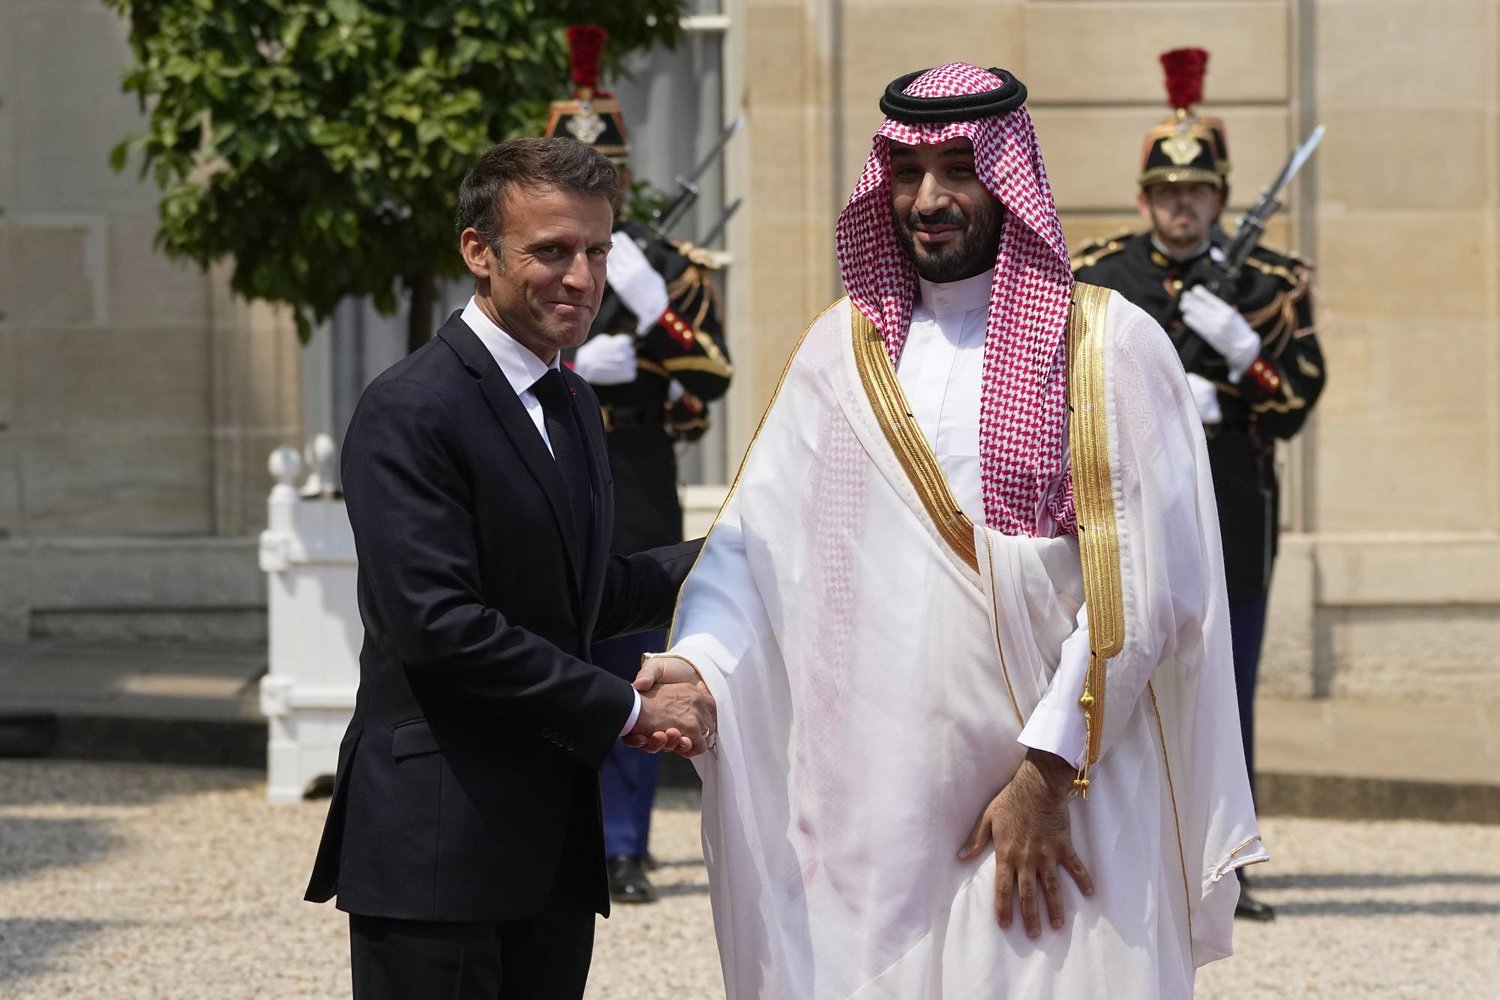 ولي العهد السعودي الأمير محمد بن سلمان والرئيس الفرنسي إيمانويل ماكرون عند مدخل الإليزيه (أ.ب)